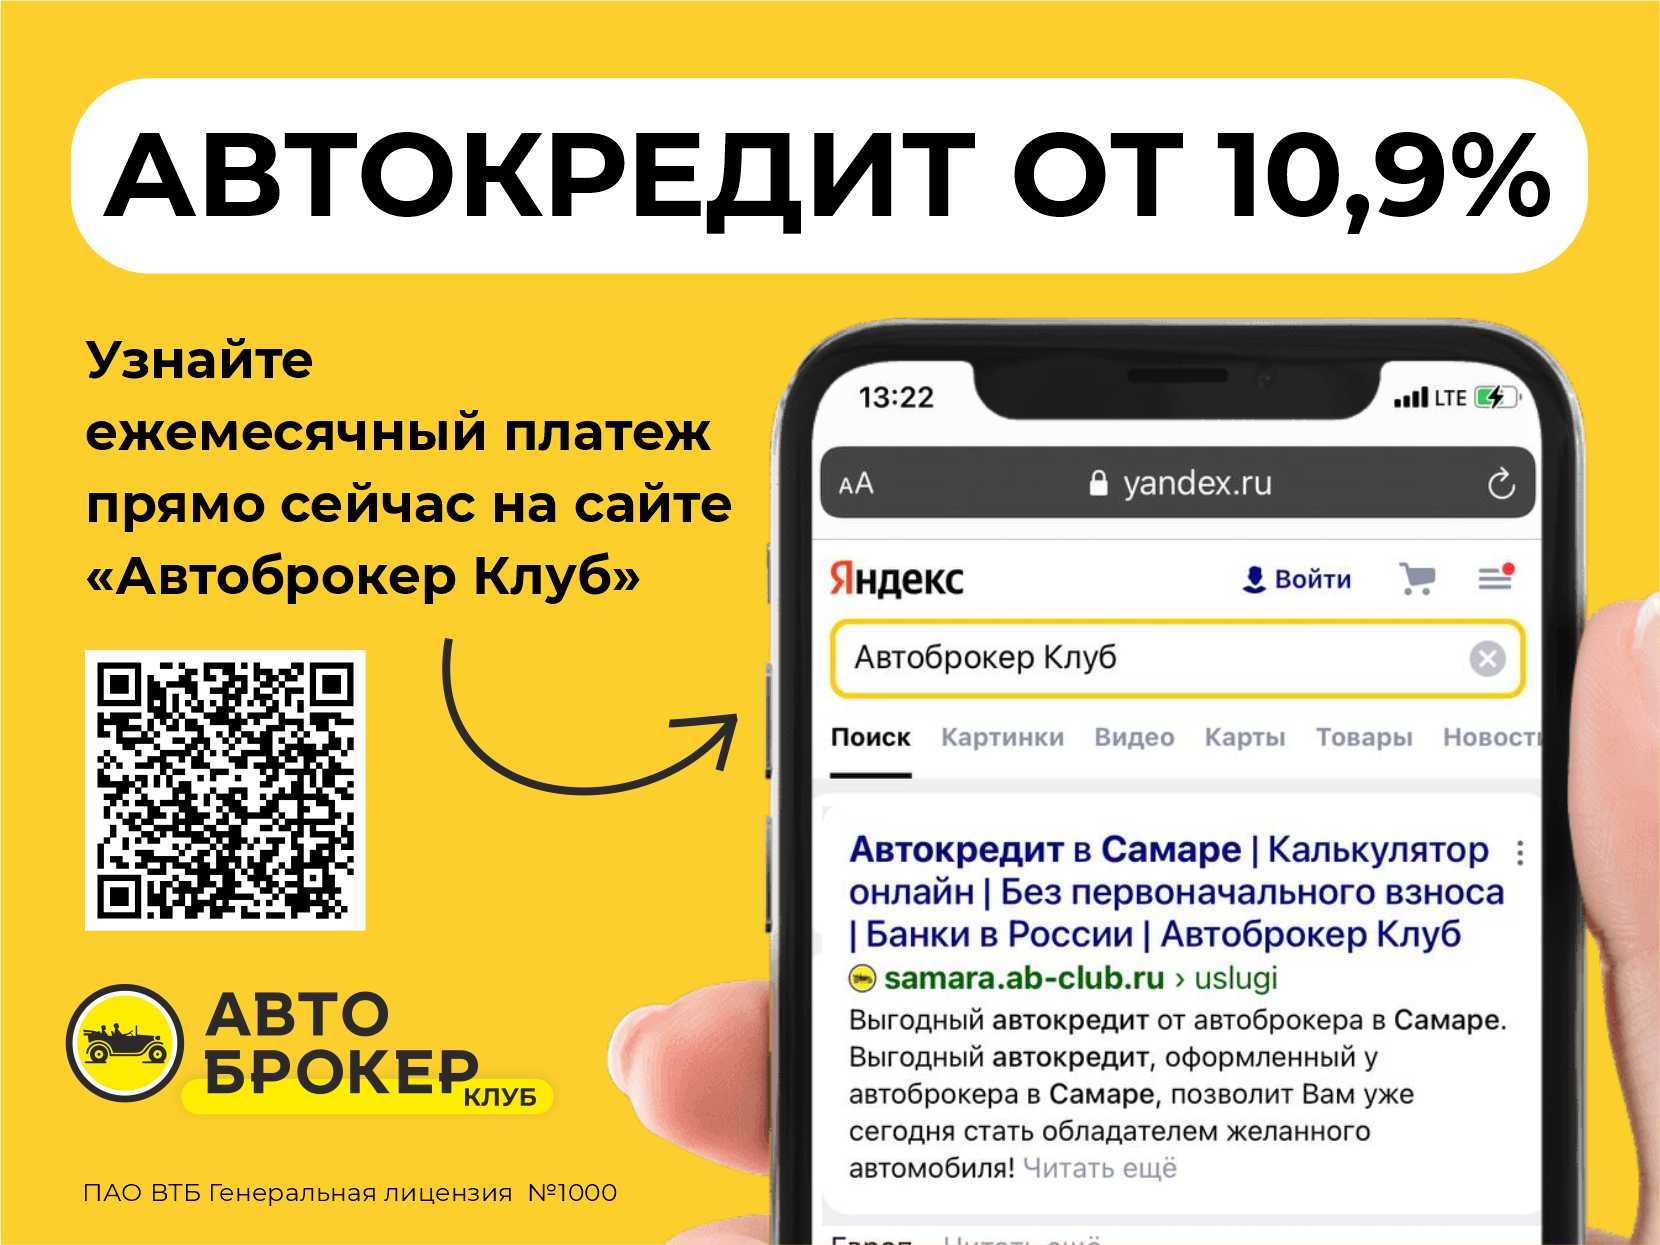 Купить б/у Kia Sportage, 2020 год, 150 л.с. в России